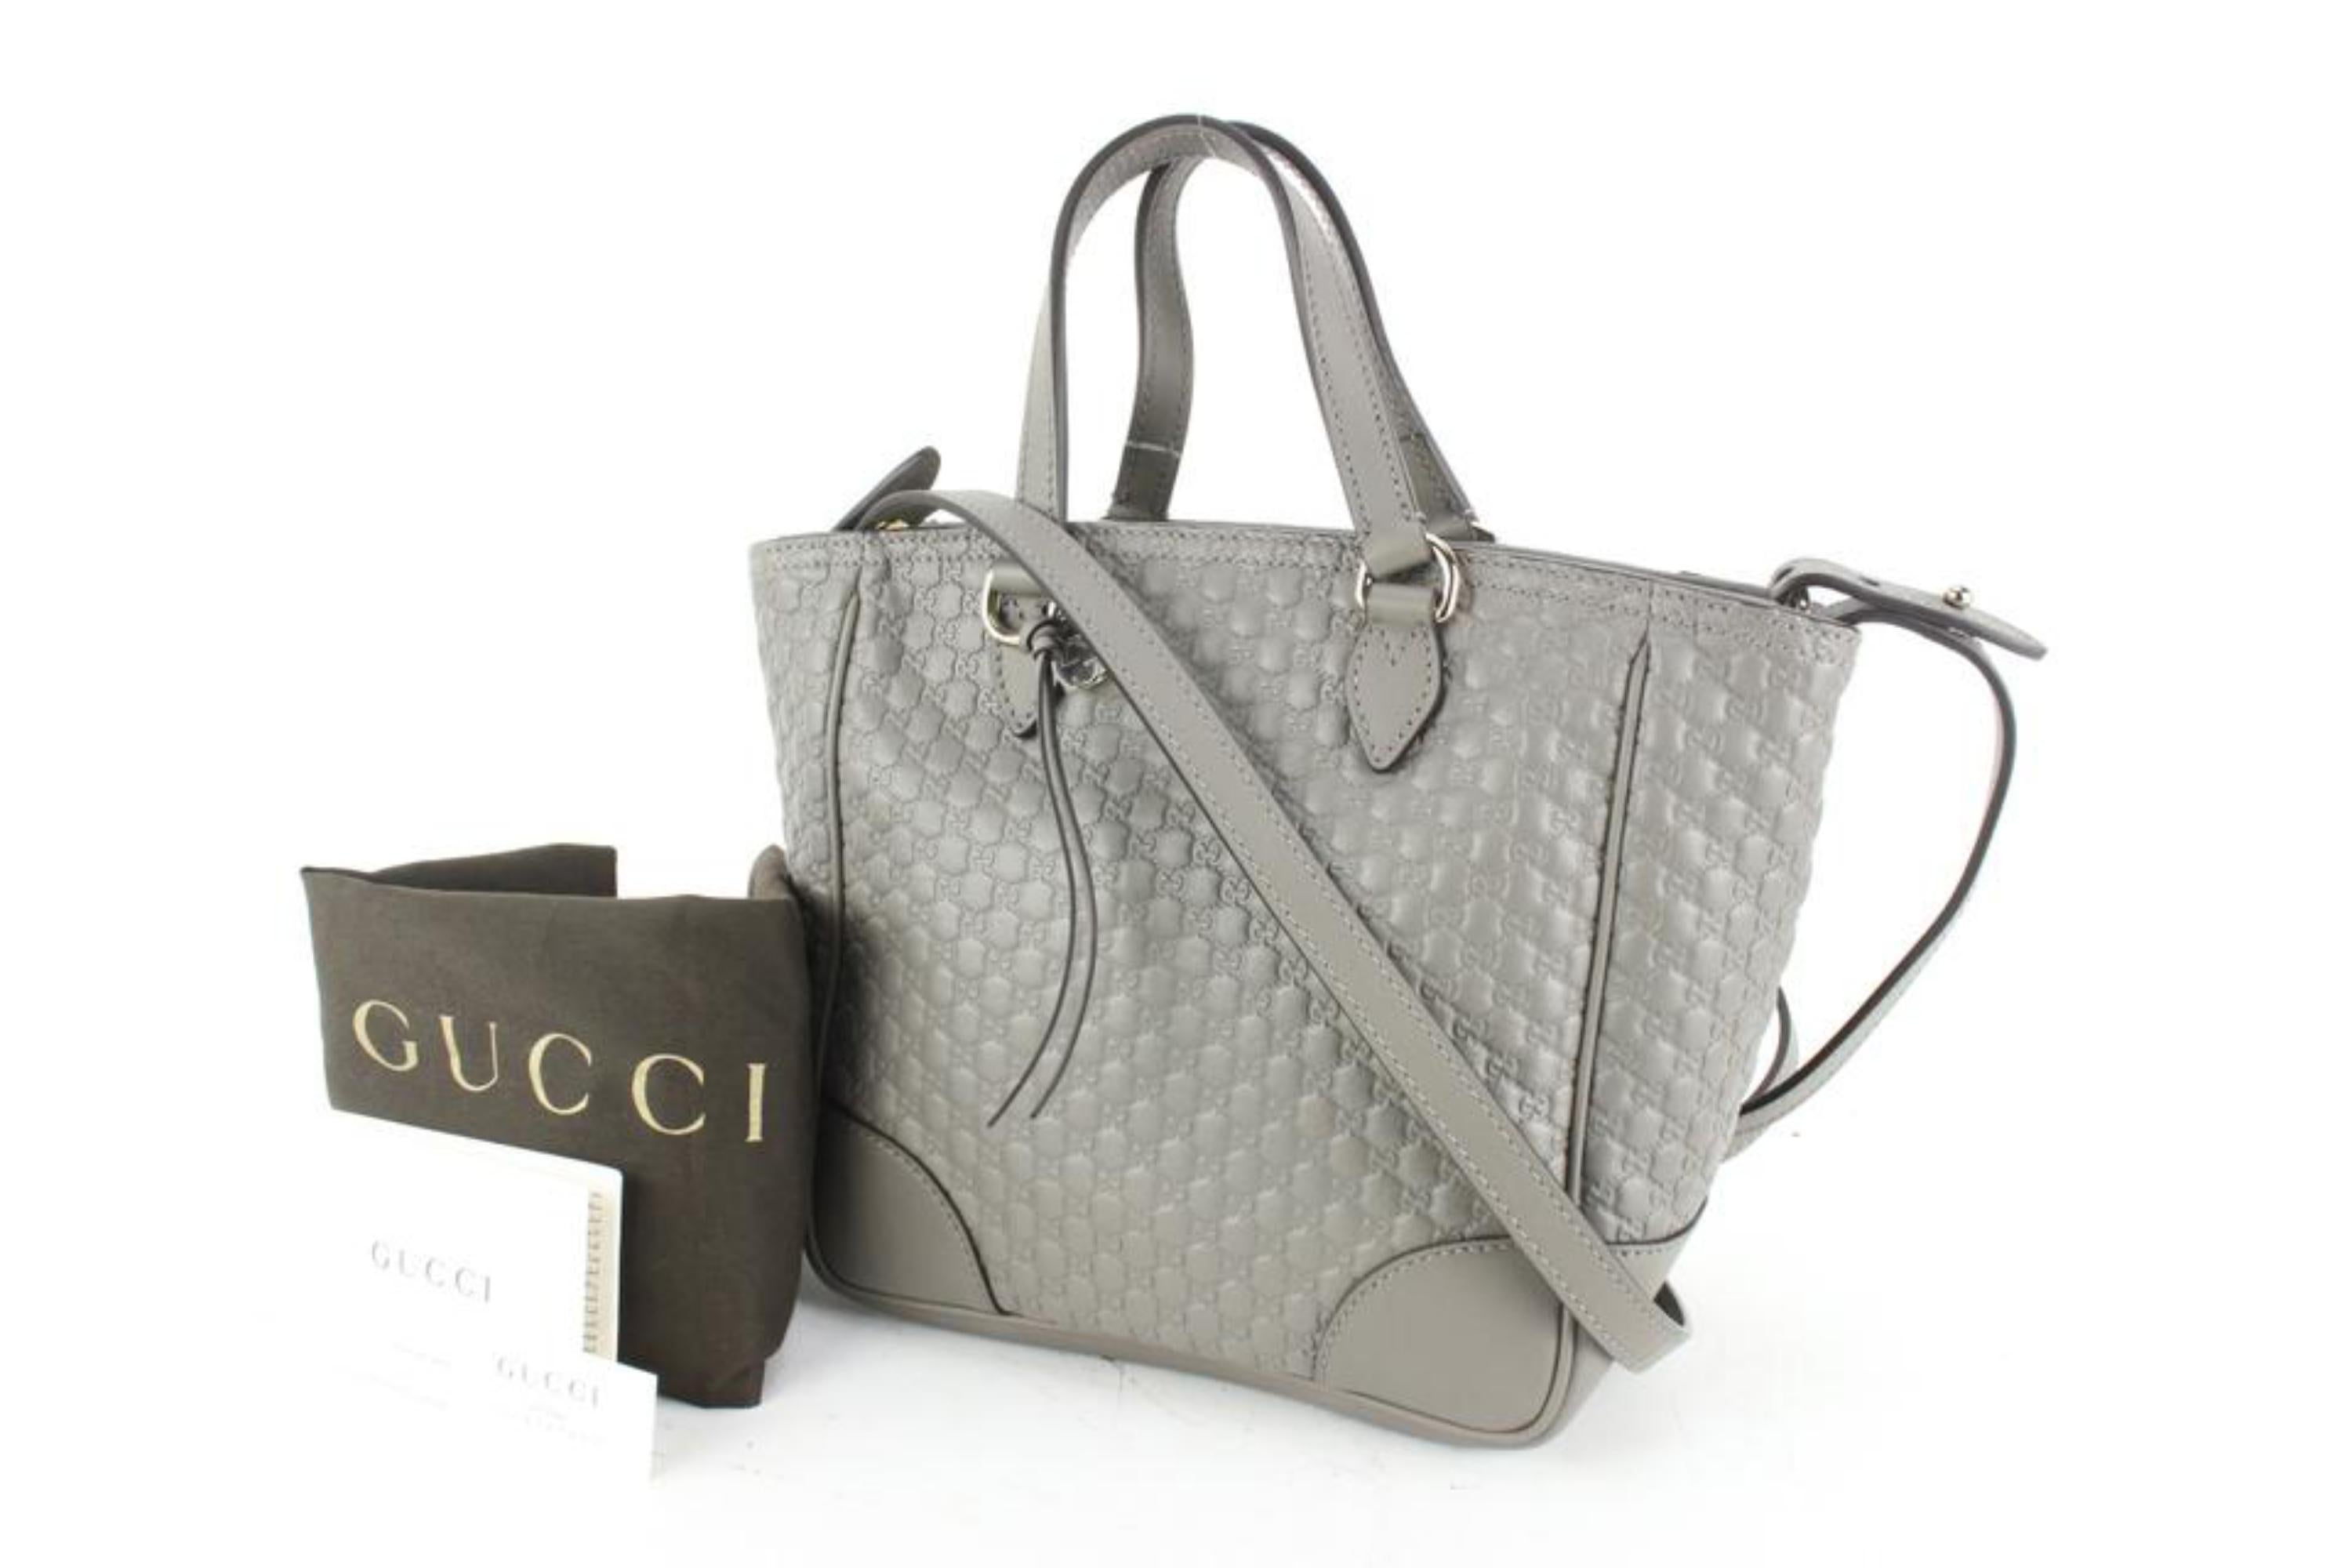 Gucci Microguccissima Small Bree Tote - Orange Totes, Handbags